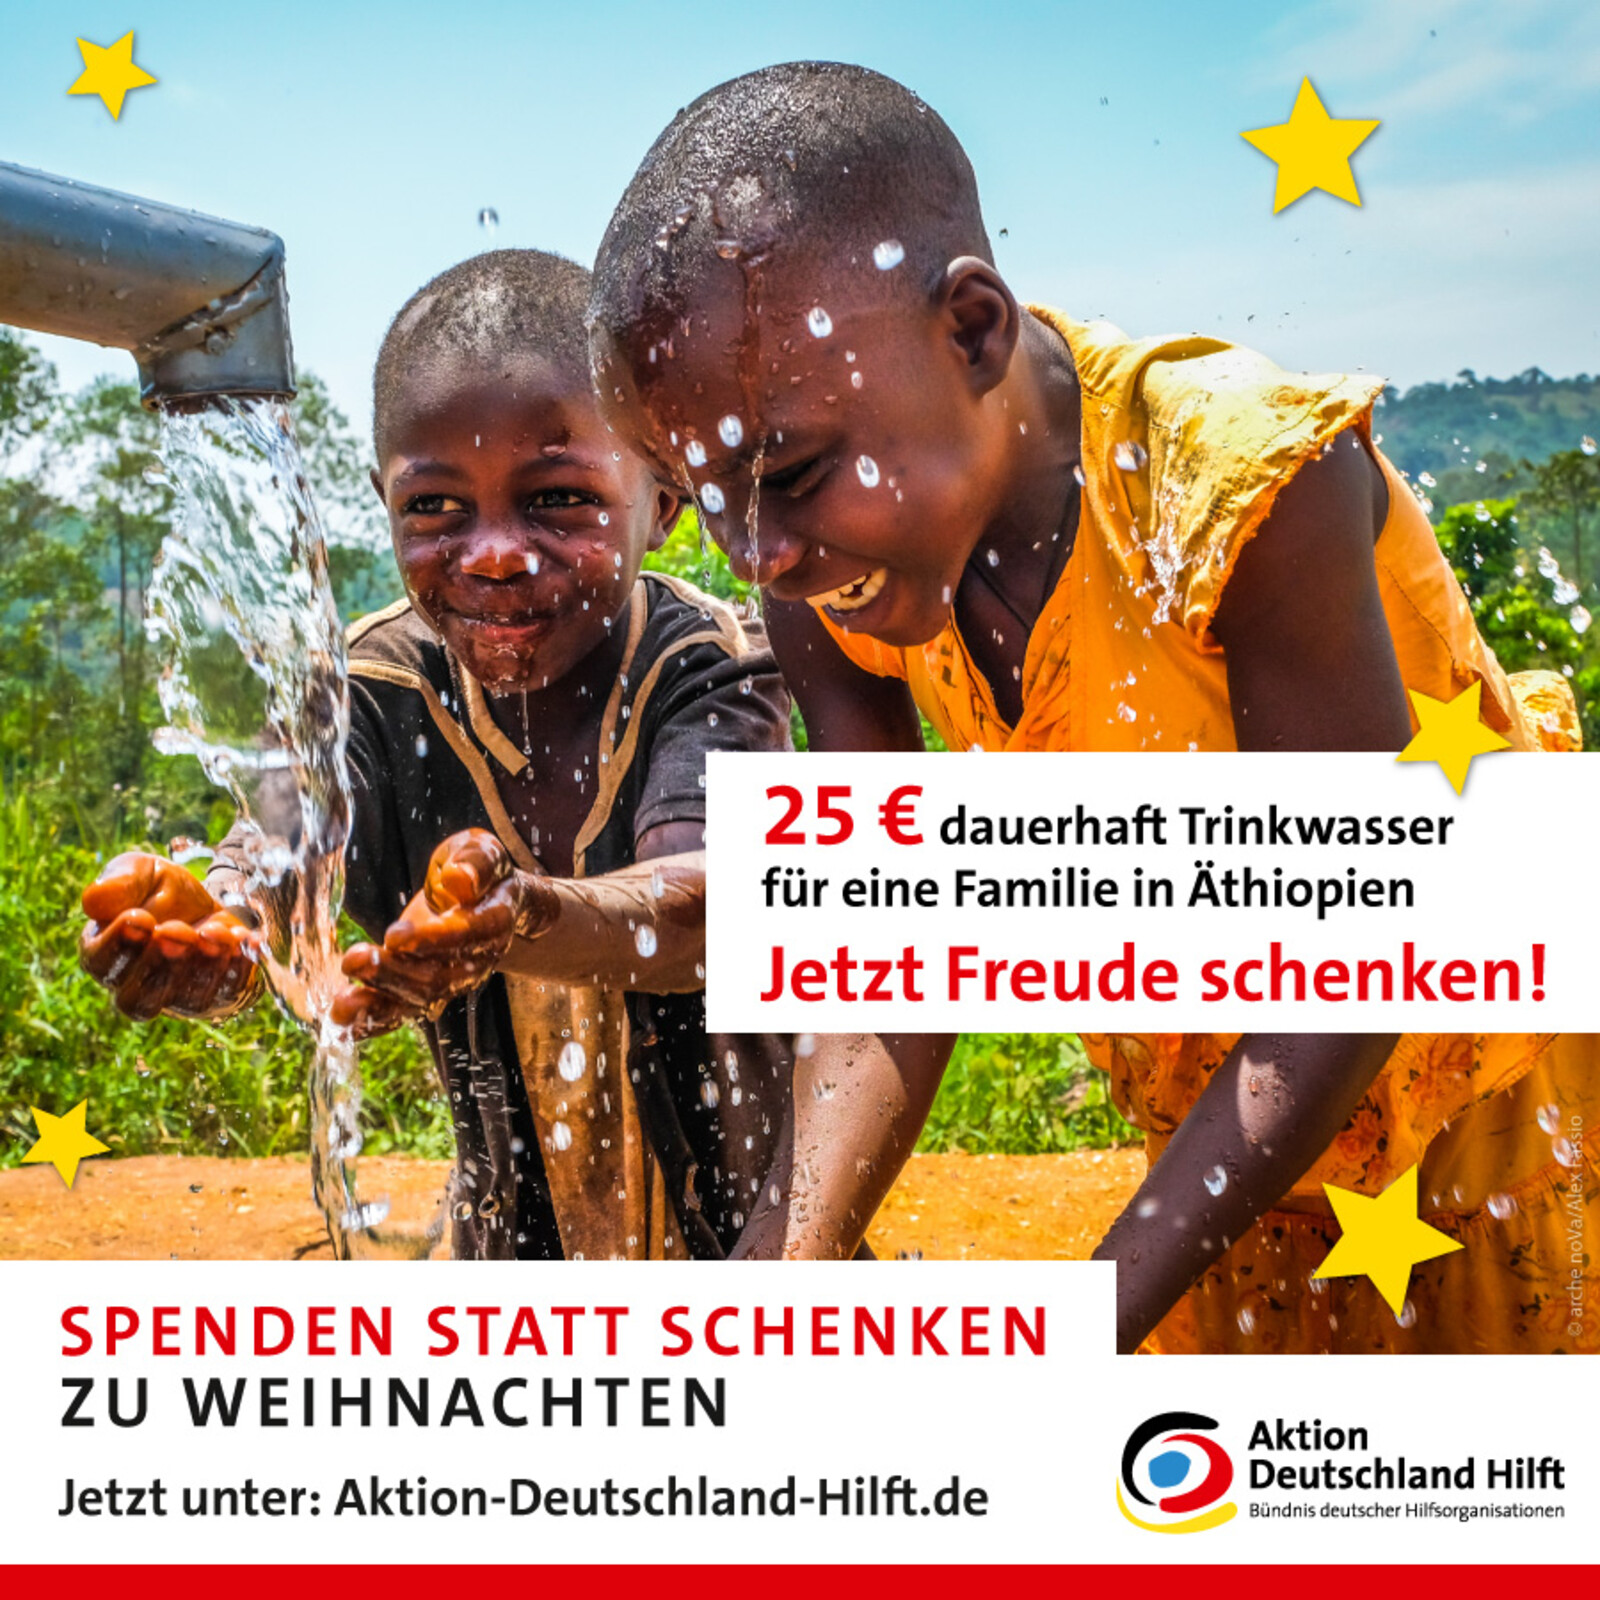 Mit 25 Euro schenken Sie einer Familie in Äthiopien dauerhaft Trinkwasser - jetzt Freude schenken!